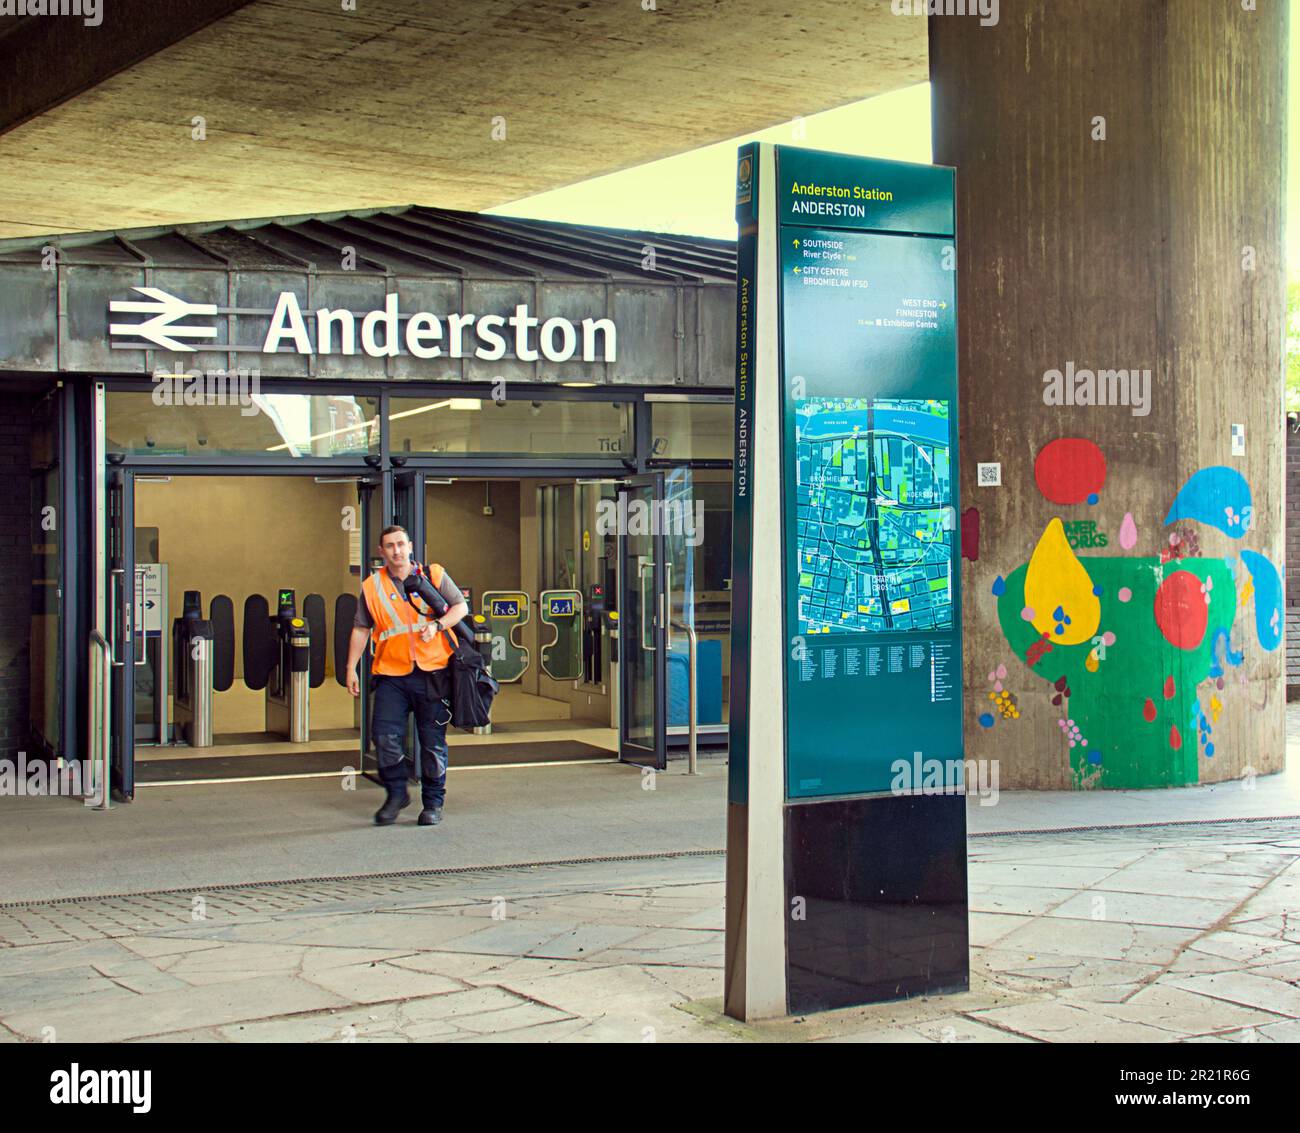 trabajador que sale de la entrada de la estación de tren de anderston Foto de stock